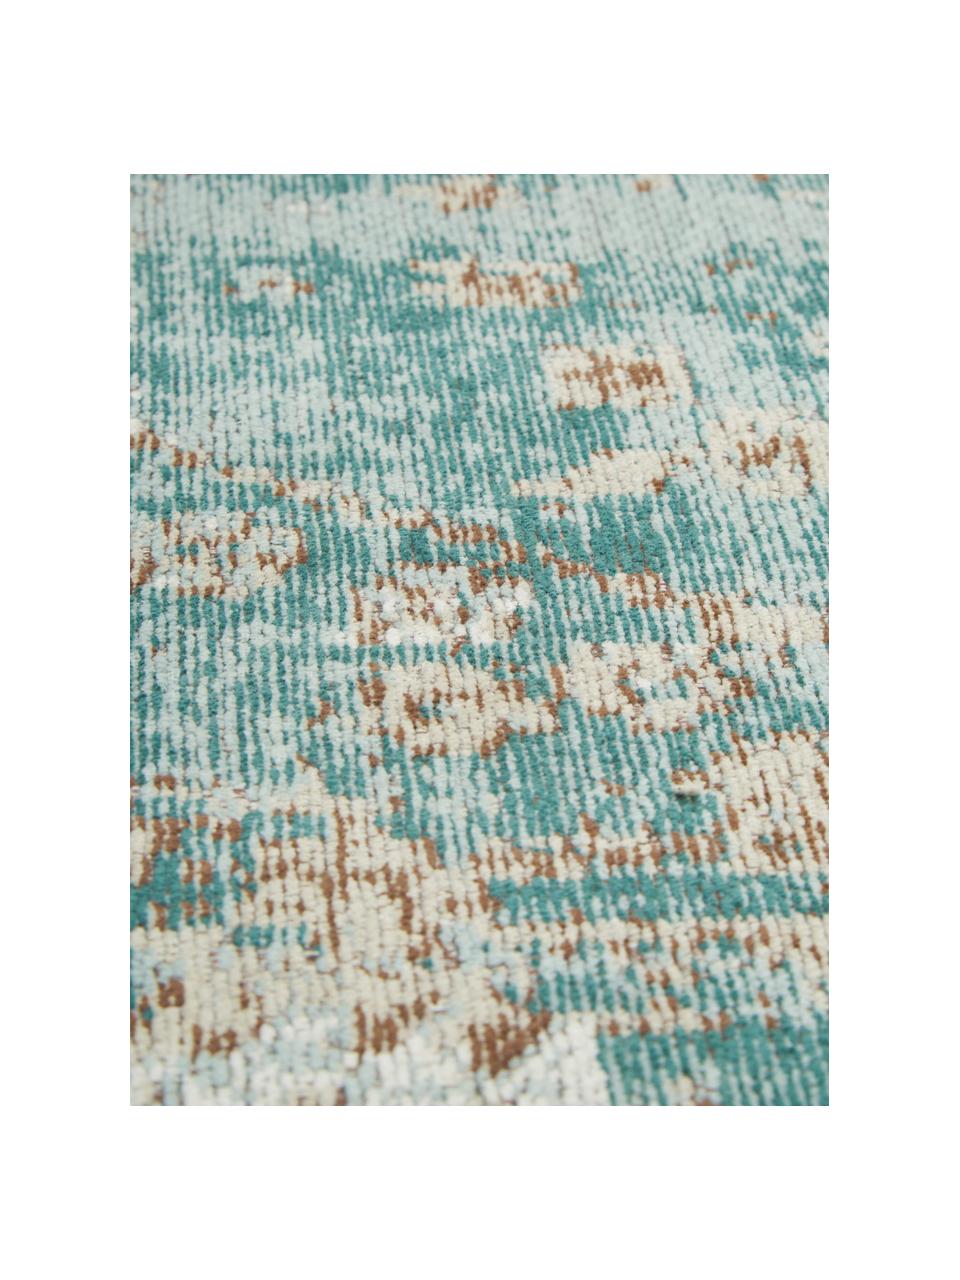 Okrągły ręcznie tkany dywan  szenilowy Rimini, Turkusowy, taupe, brązowy, Ø 120 cm (Rozmiar S)